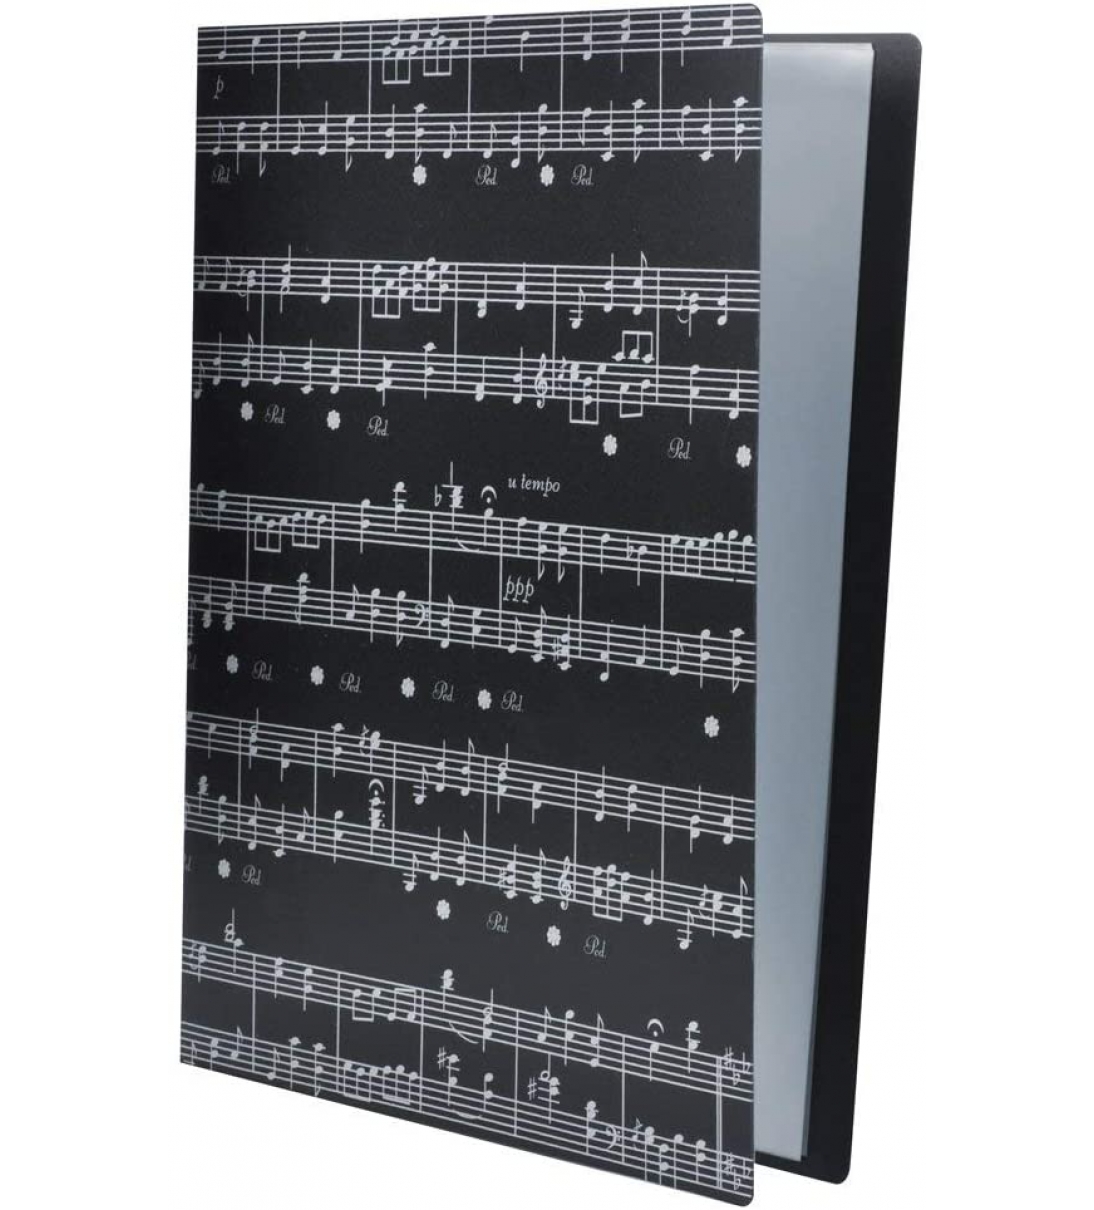 Cartella porta spartiti in formato A4 con 40 tasche Musical